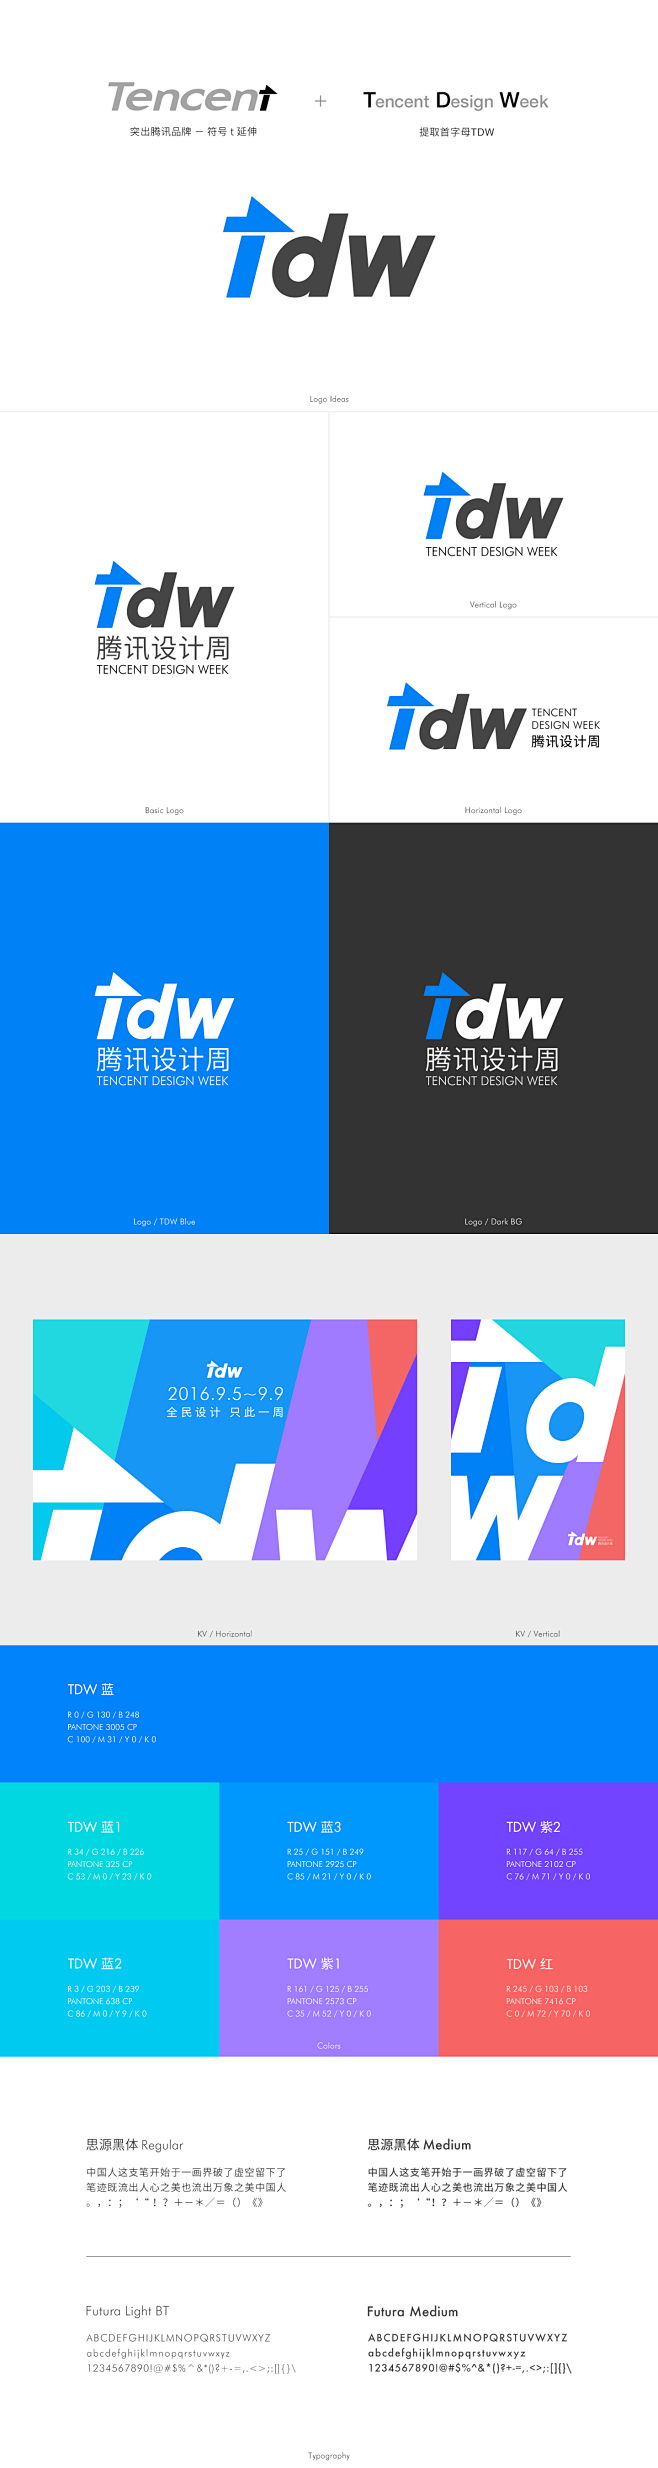 tdw-branding-01-logo...